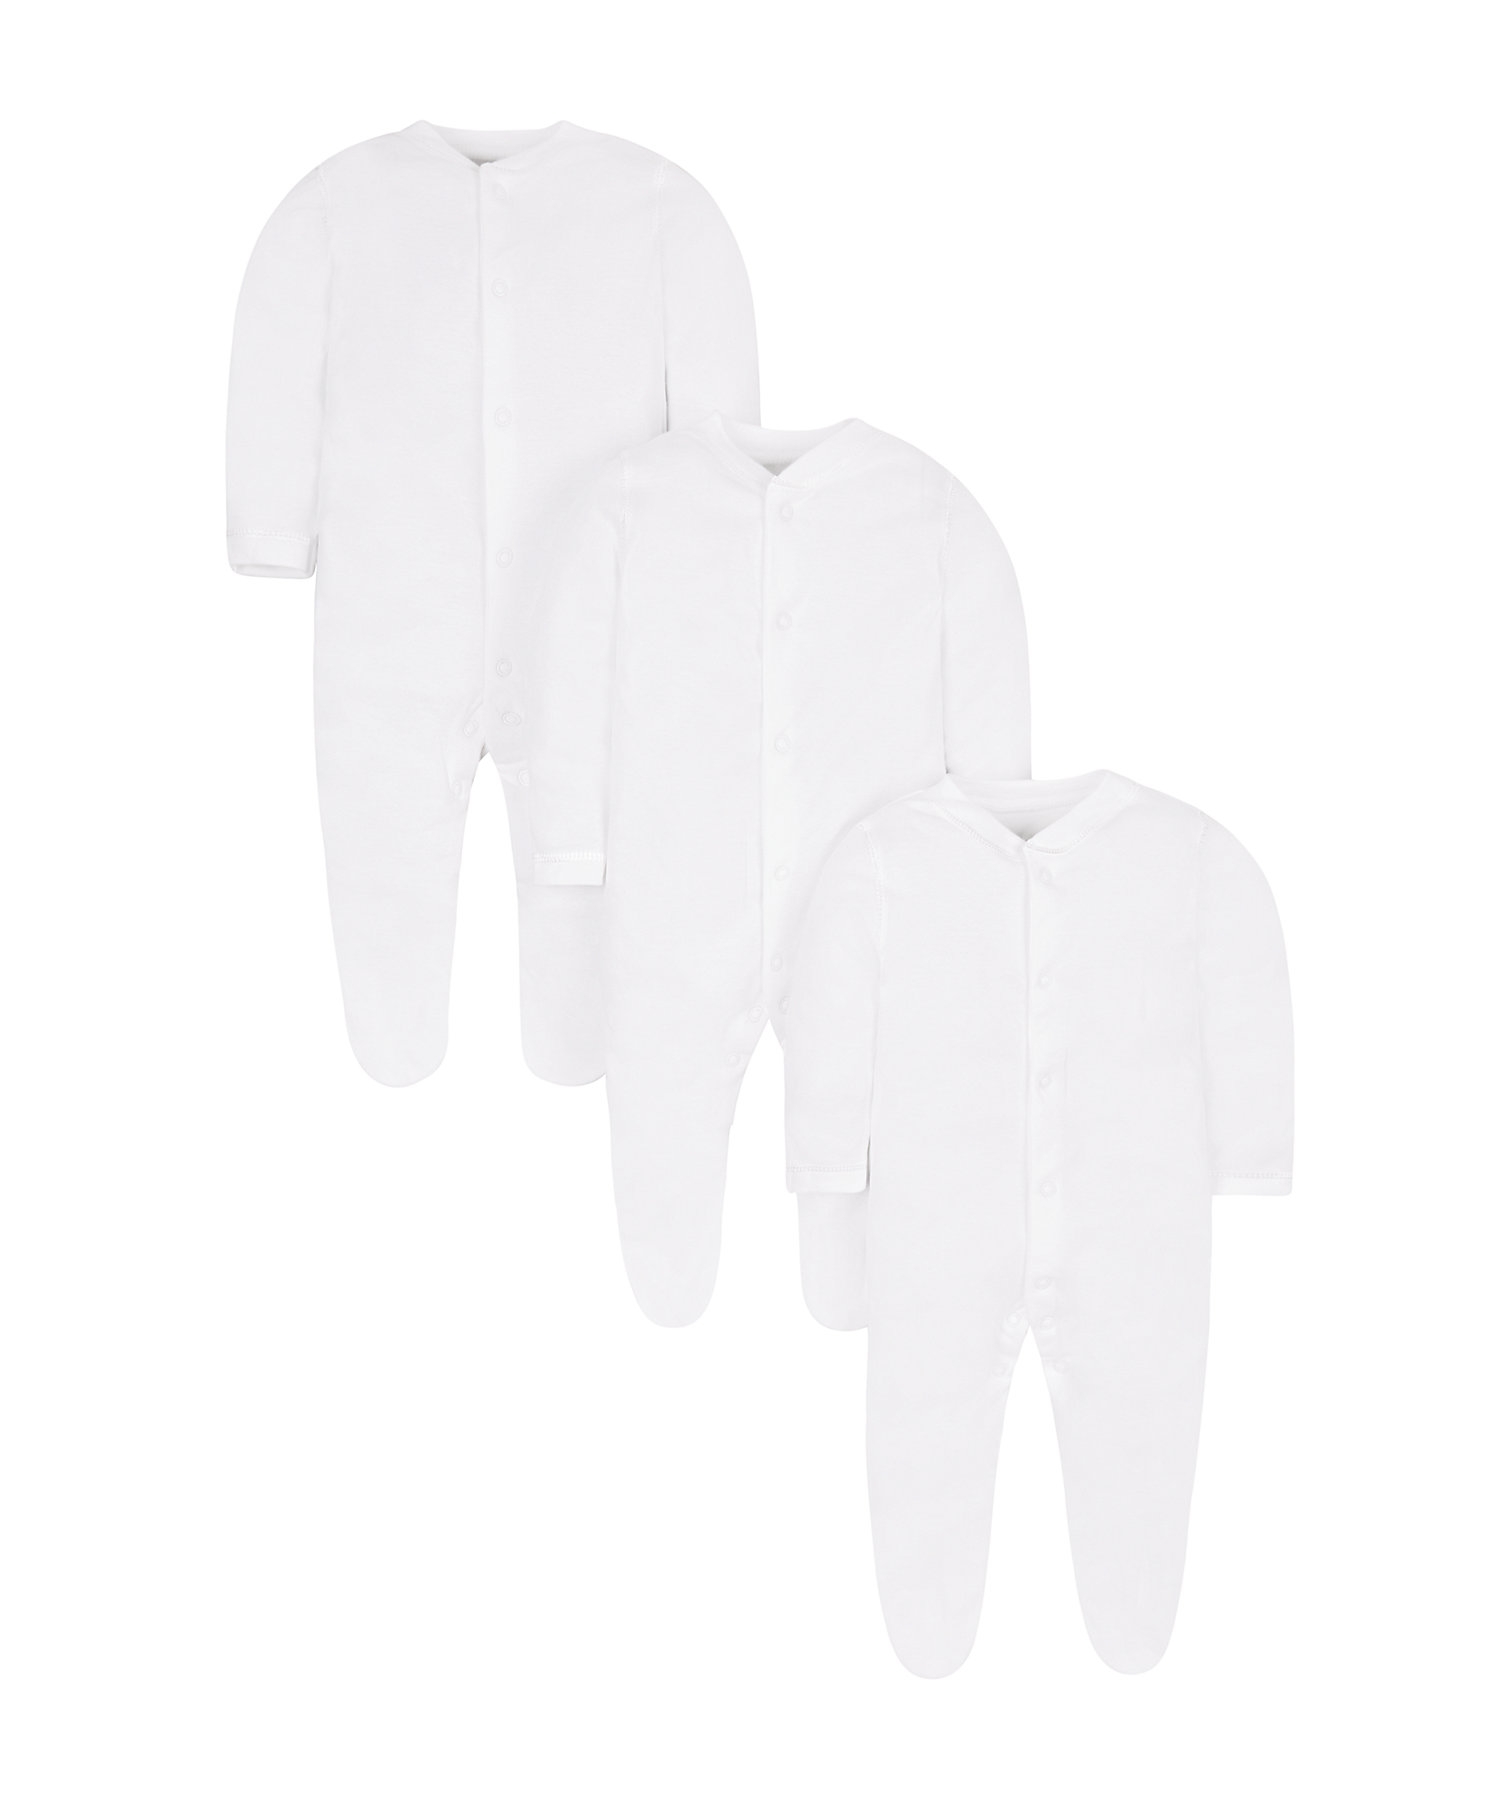 Mothercare | Unisex Full Sleeves Sleepsuit - Pack Of 3 - White